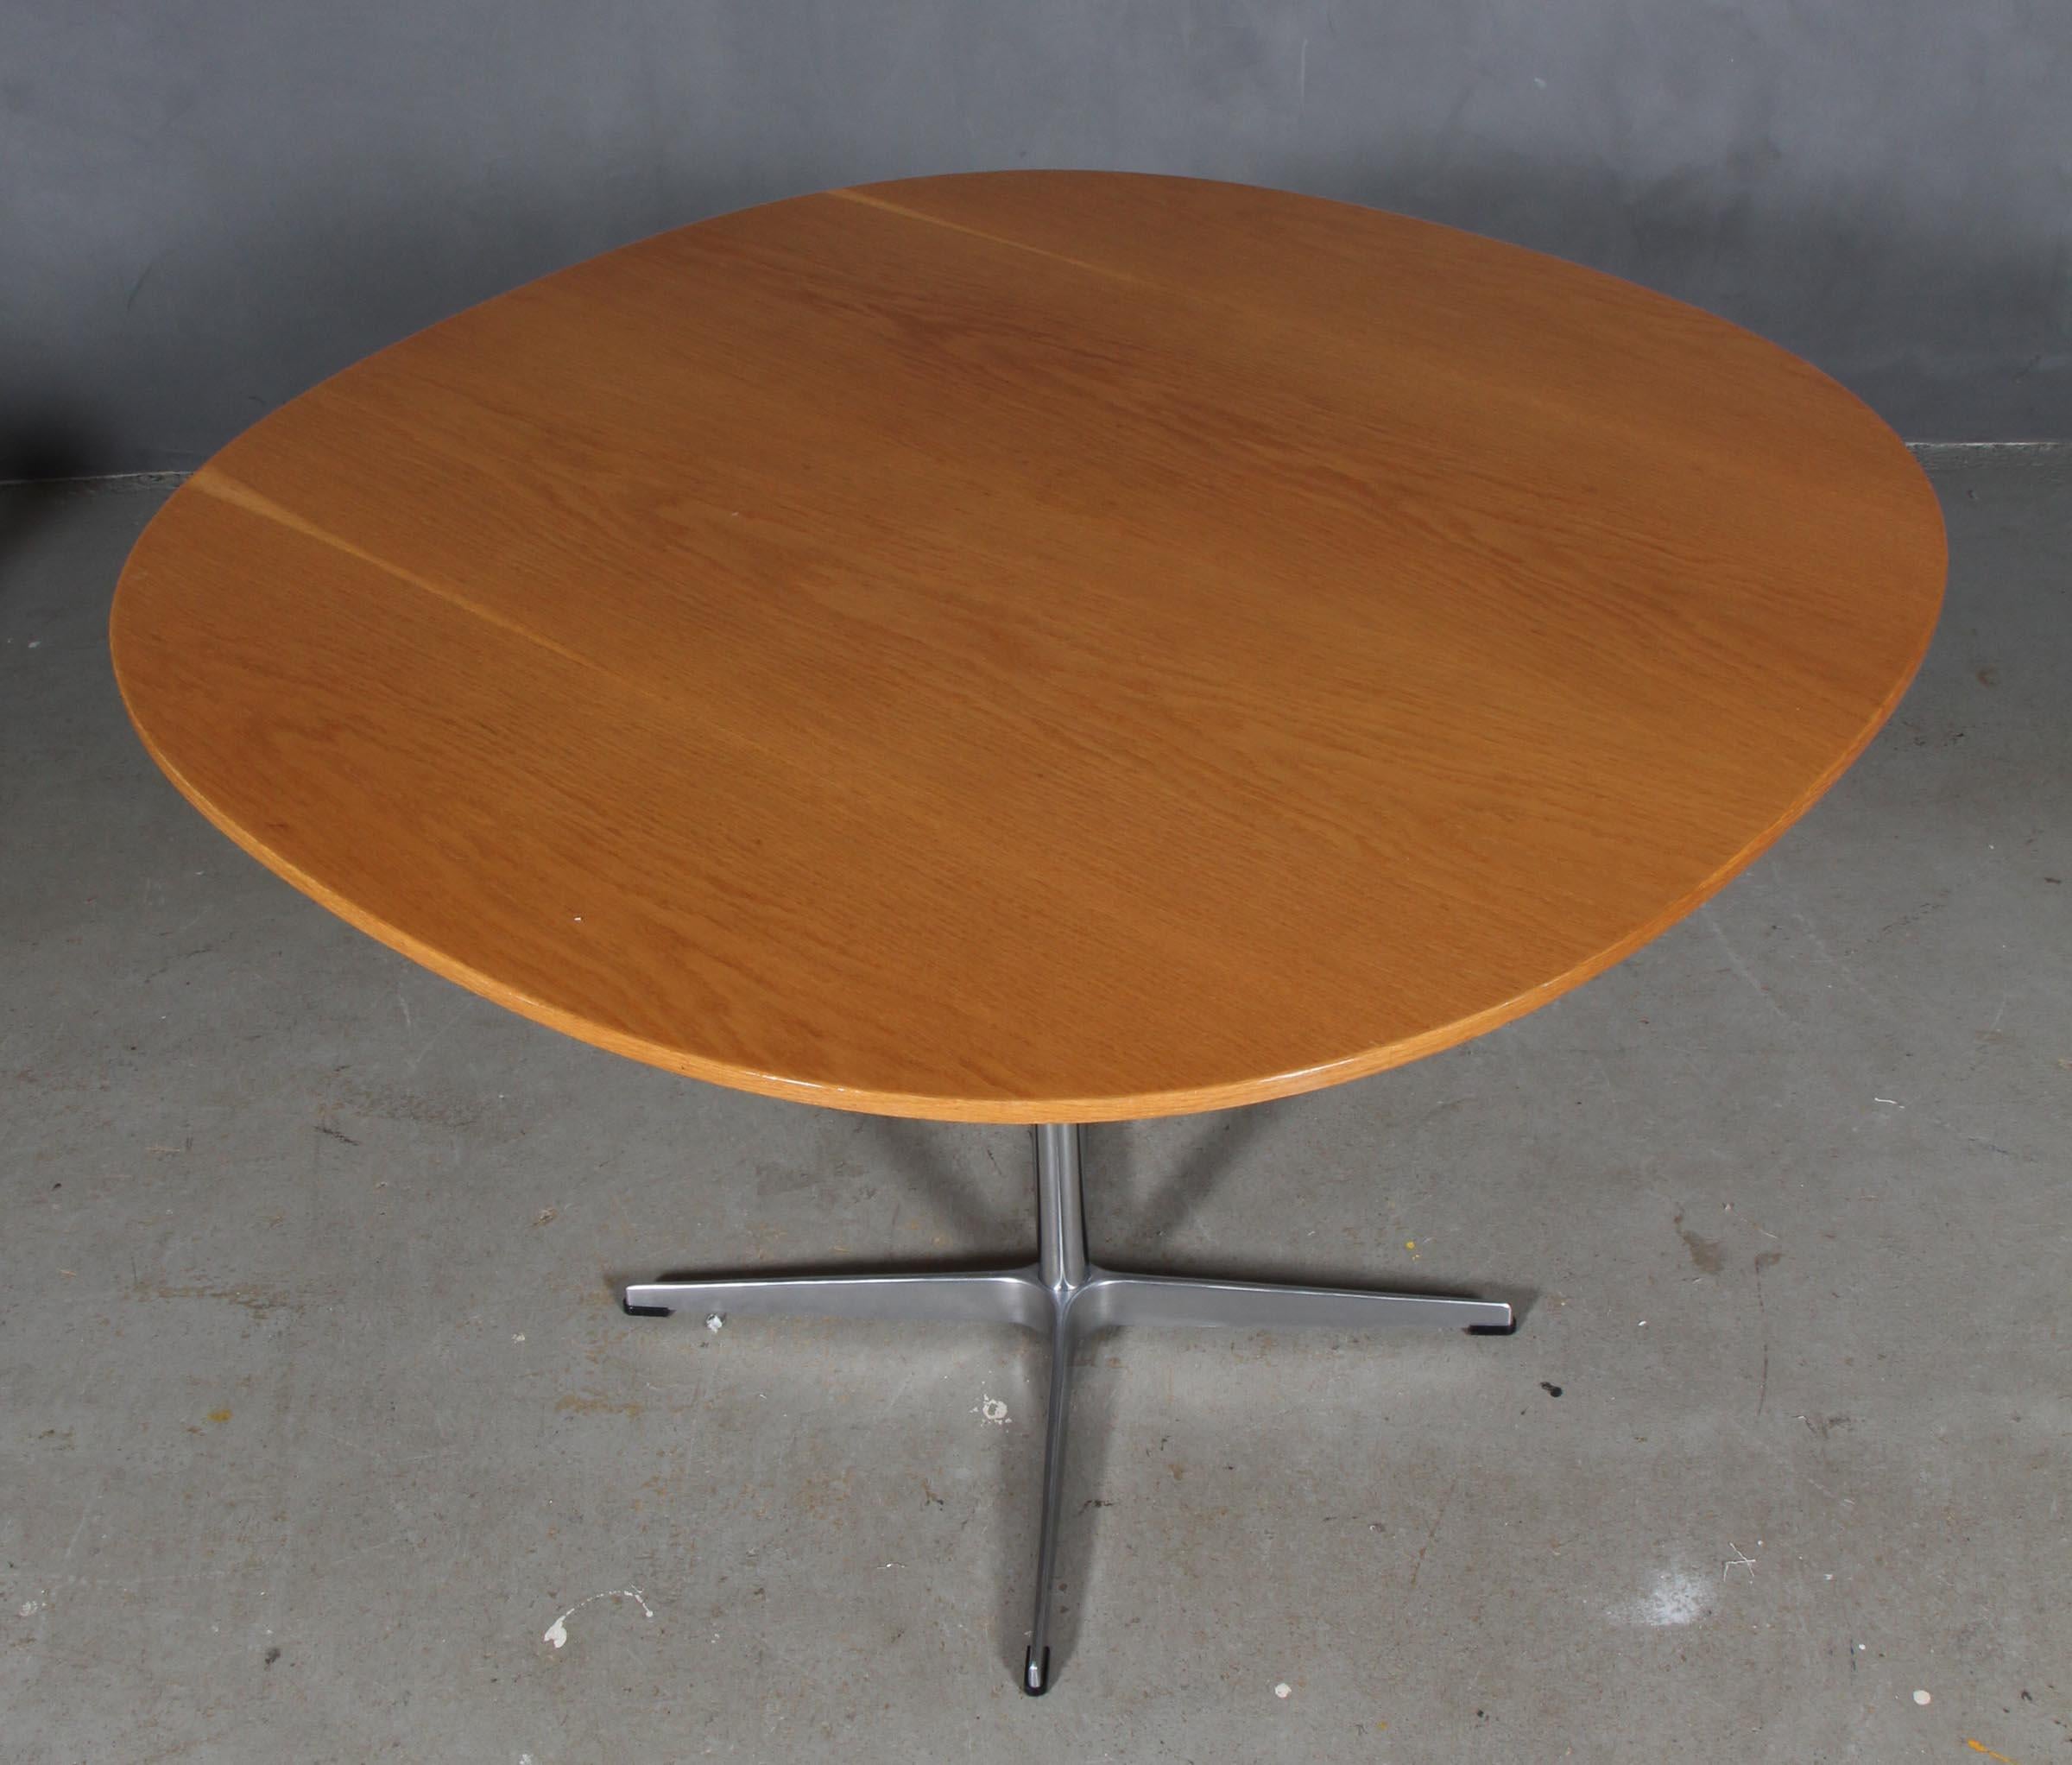 Table de café Piet Hein & Arne Jacobsen avec plateau en chêne plaqué.

Base à quatre étoiles en aluminium et acier.

Fabriqué par Fritz Hansen.